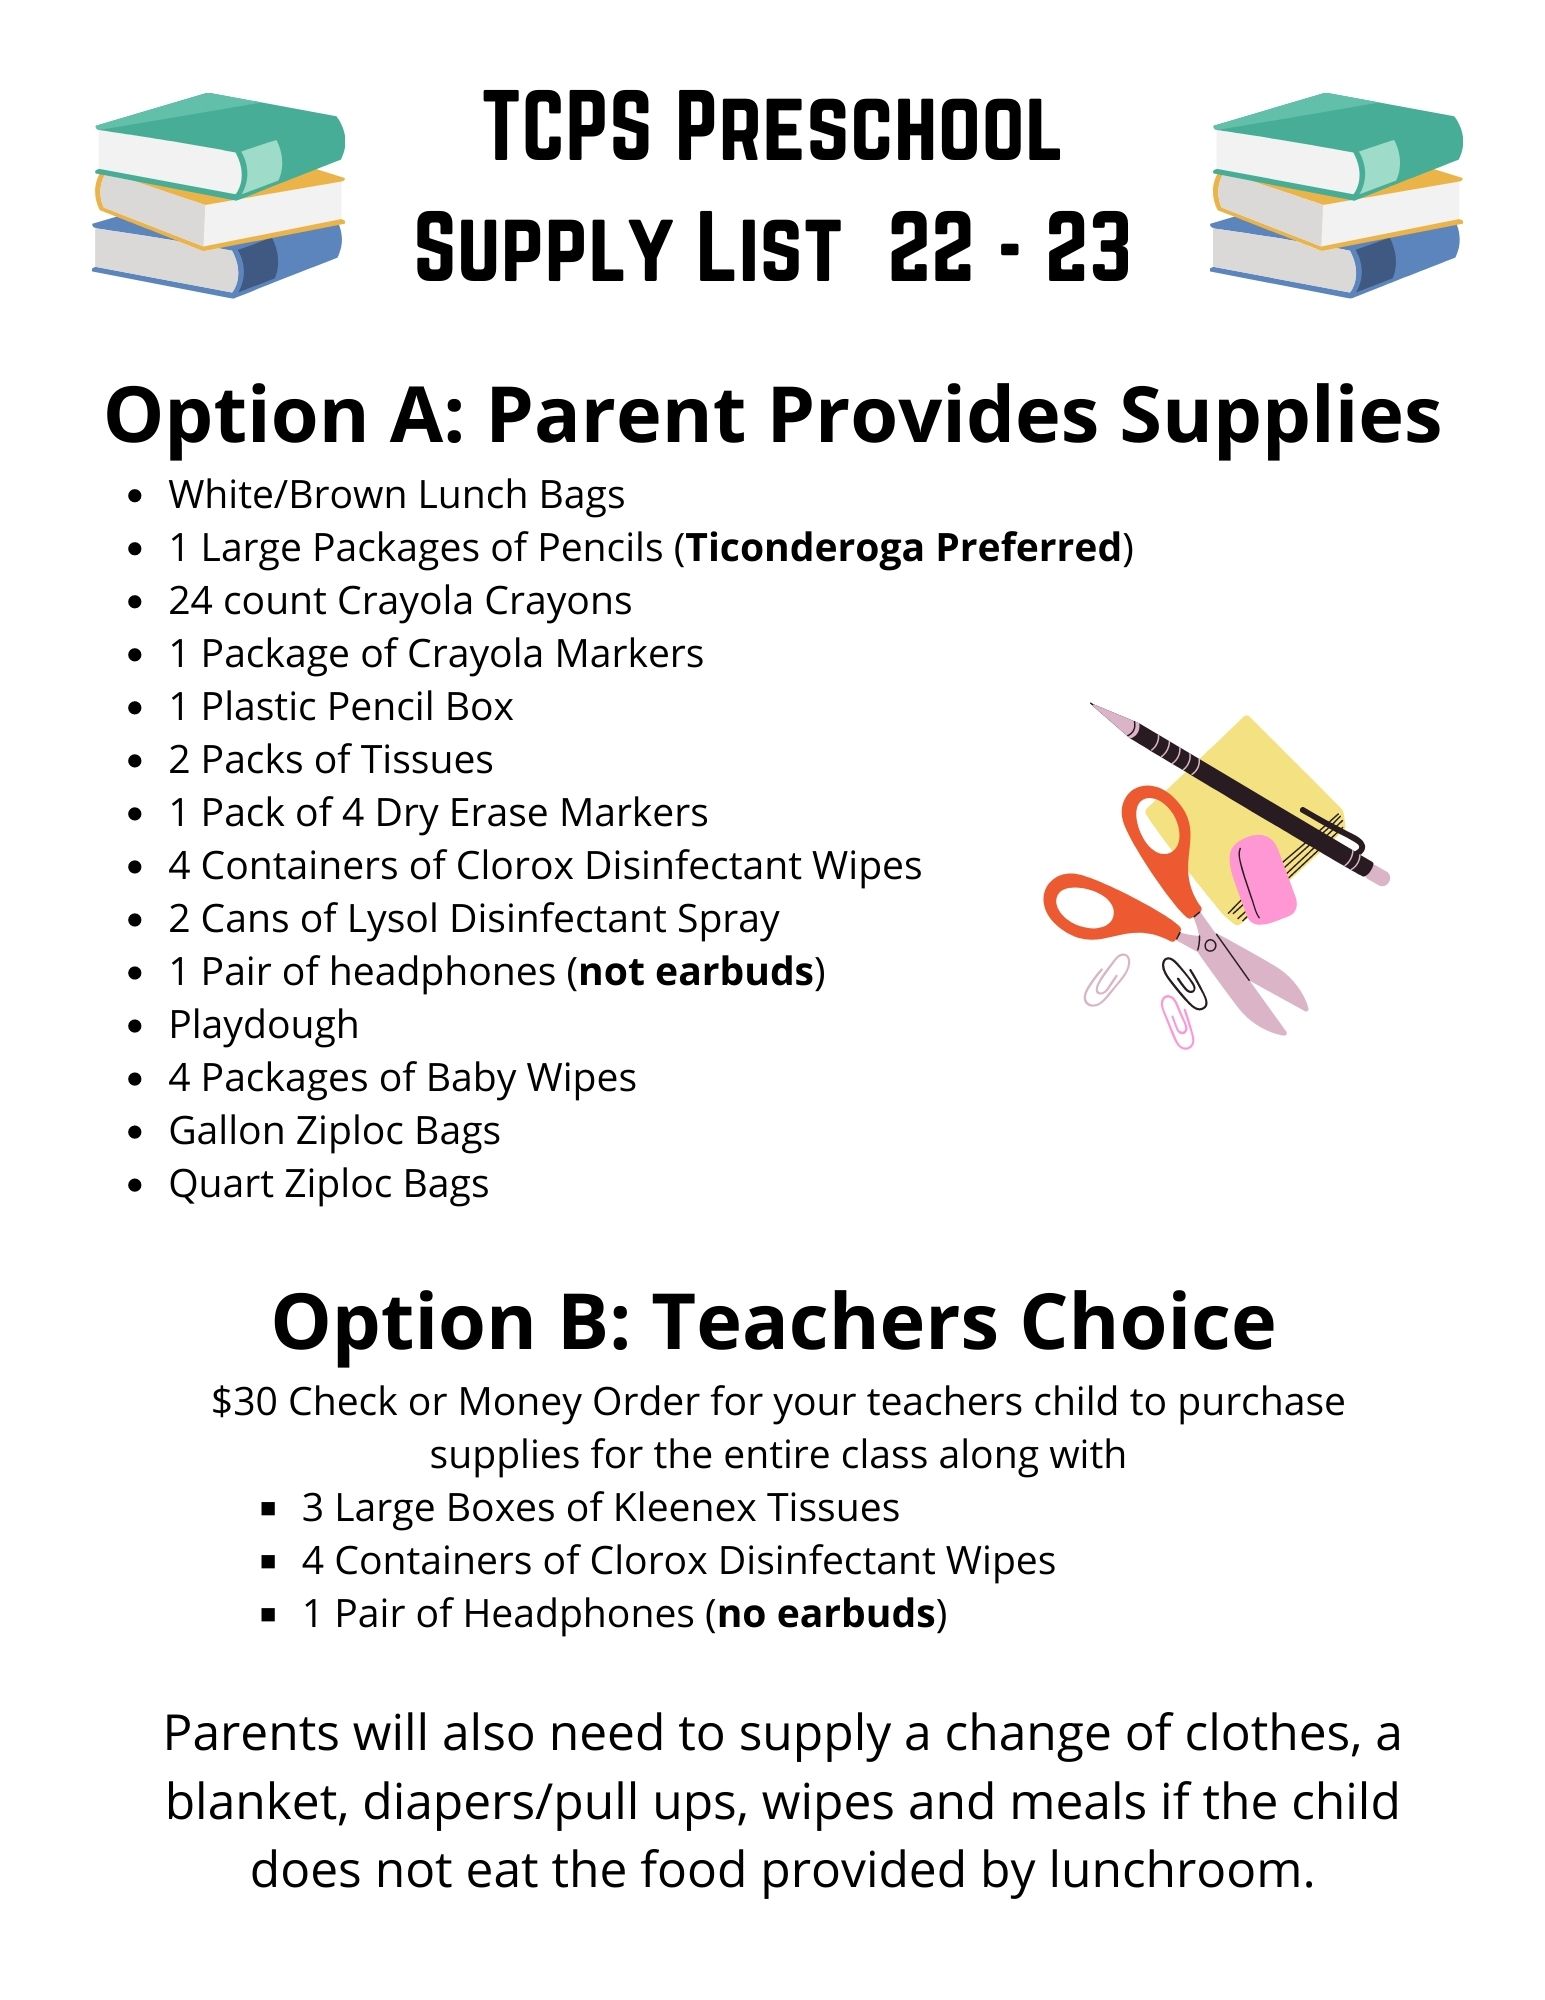 Kindergarten School Supplies List 2022